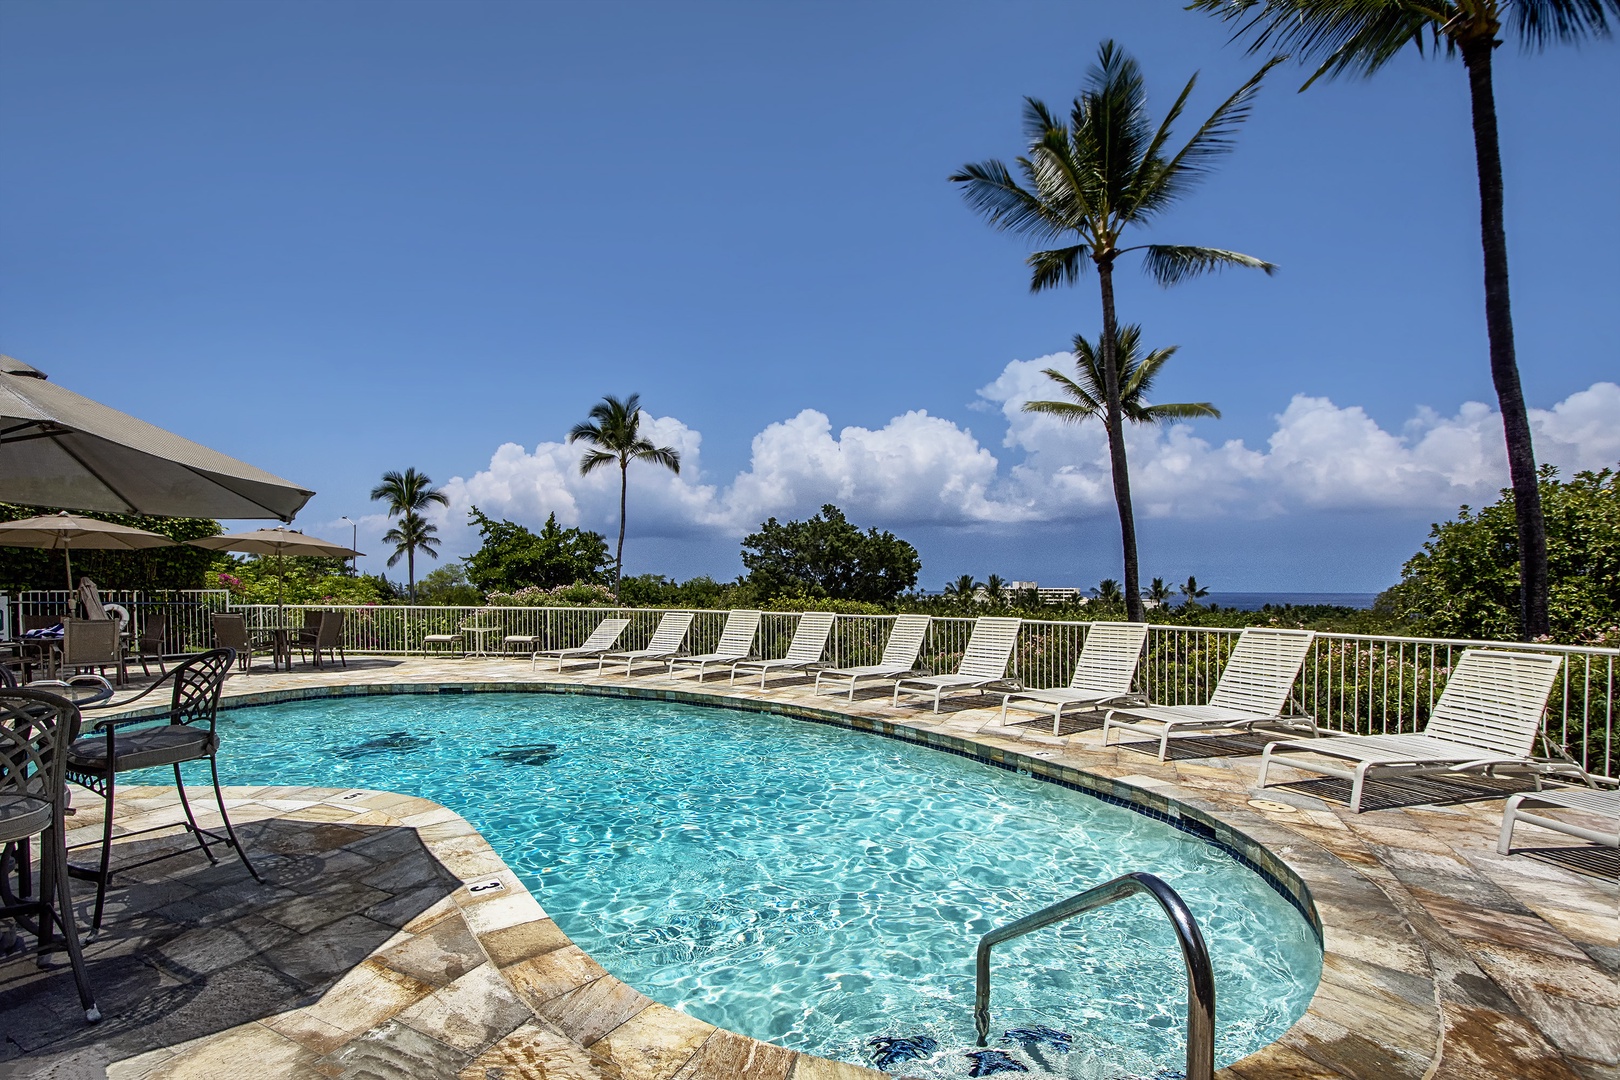 Kailua Kona Vacation Rentals, Keauhou Akahi 302 - Complex pool to enjoy for a swim